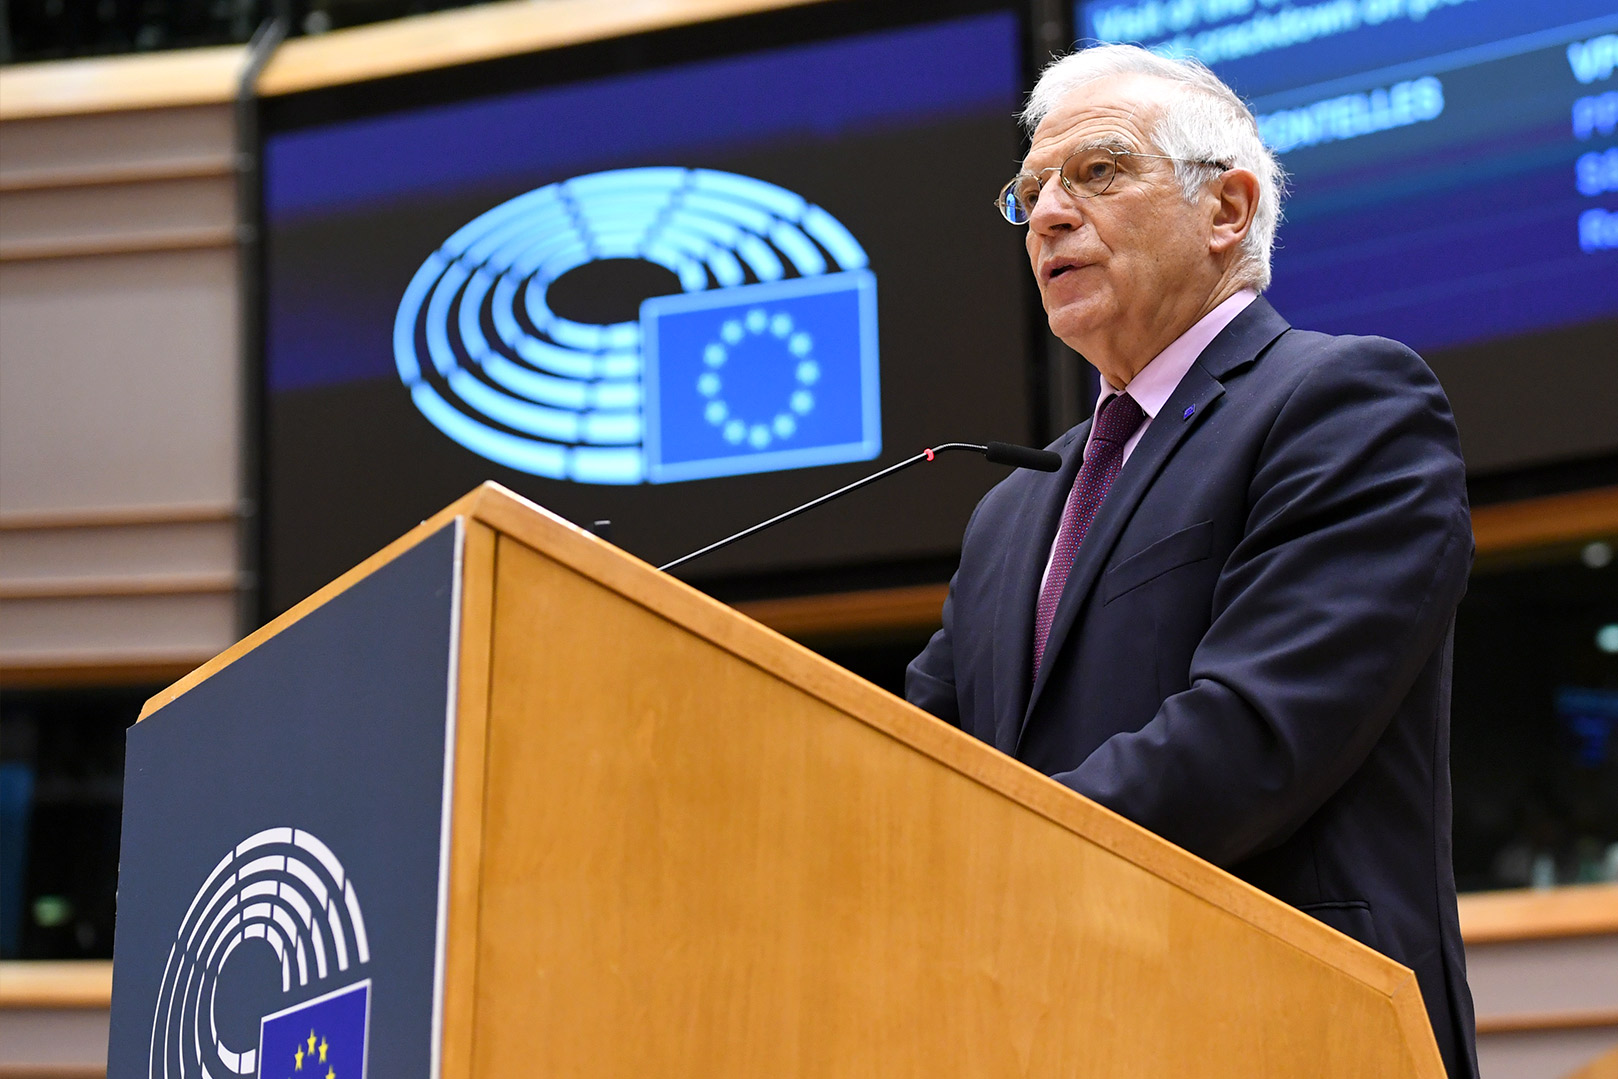 Έκτακτη τηλεδιάσκεψη των ΥΠΕΞ της ΕΕ, για την κλιμάκωση της βίας μεταξύ Ισραήλ και Παλαιστίνης, συγκαλεί ο Μπορέλ